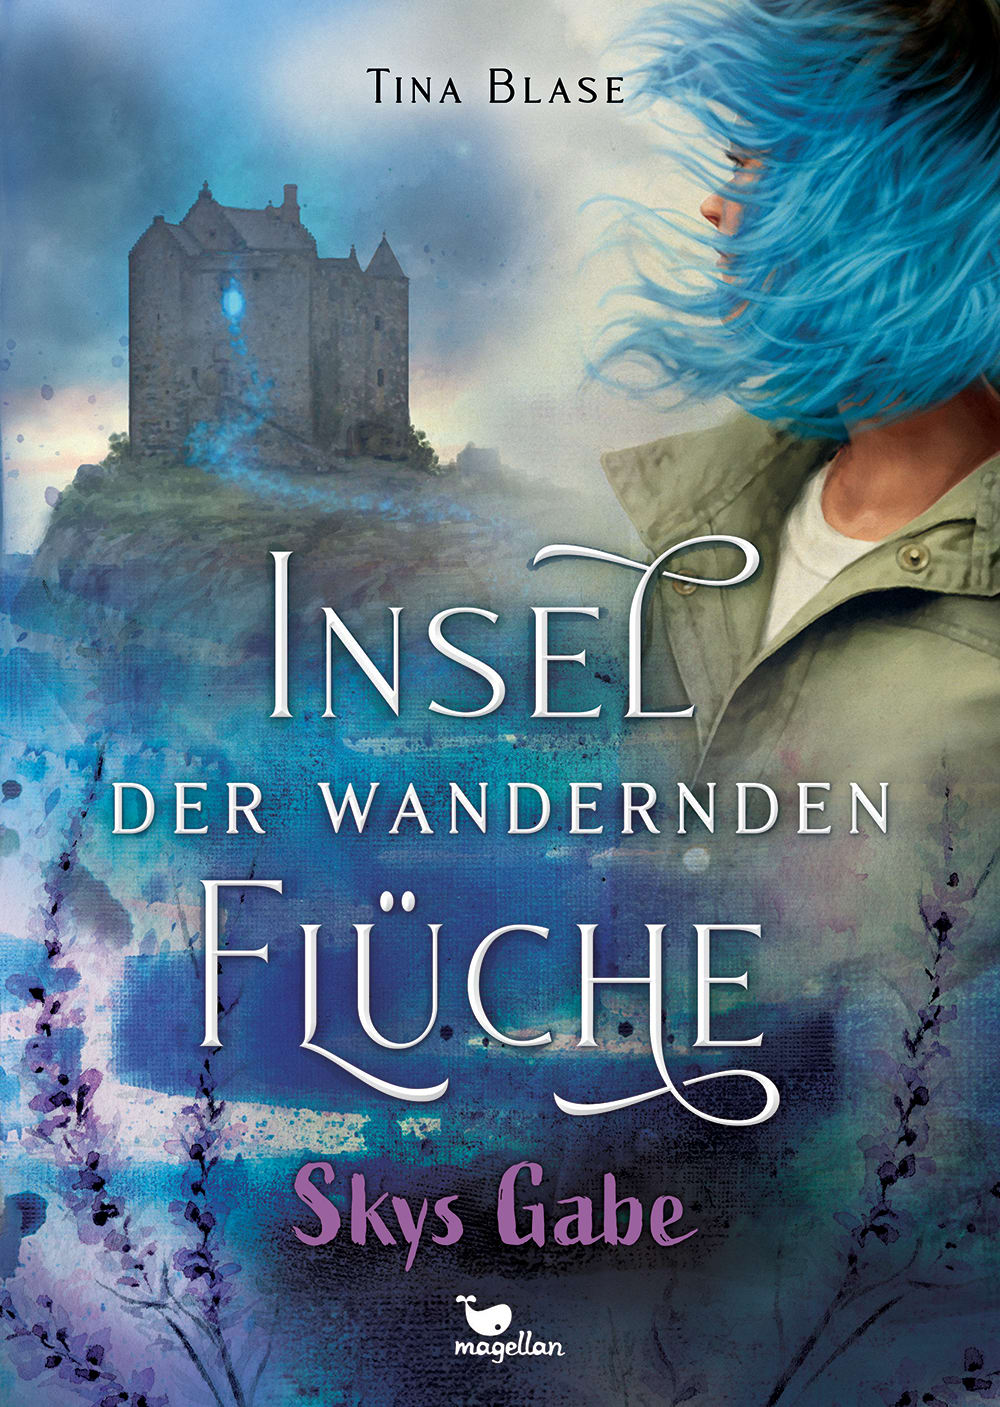 Cover, ein Mädchen mit blauen Haaren, gewandt zu einer Burg, ein magischer blauer Faden zieht sich von ihrer Hand zur Burg